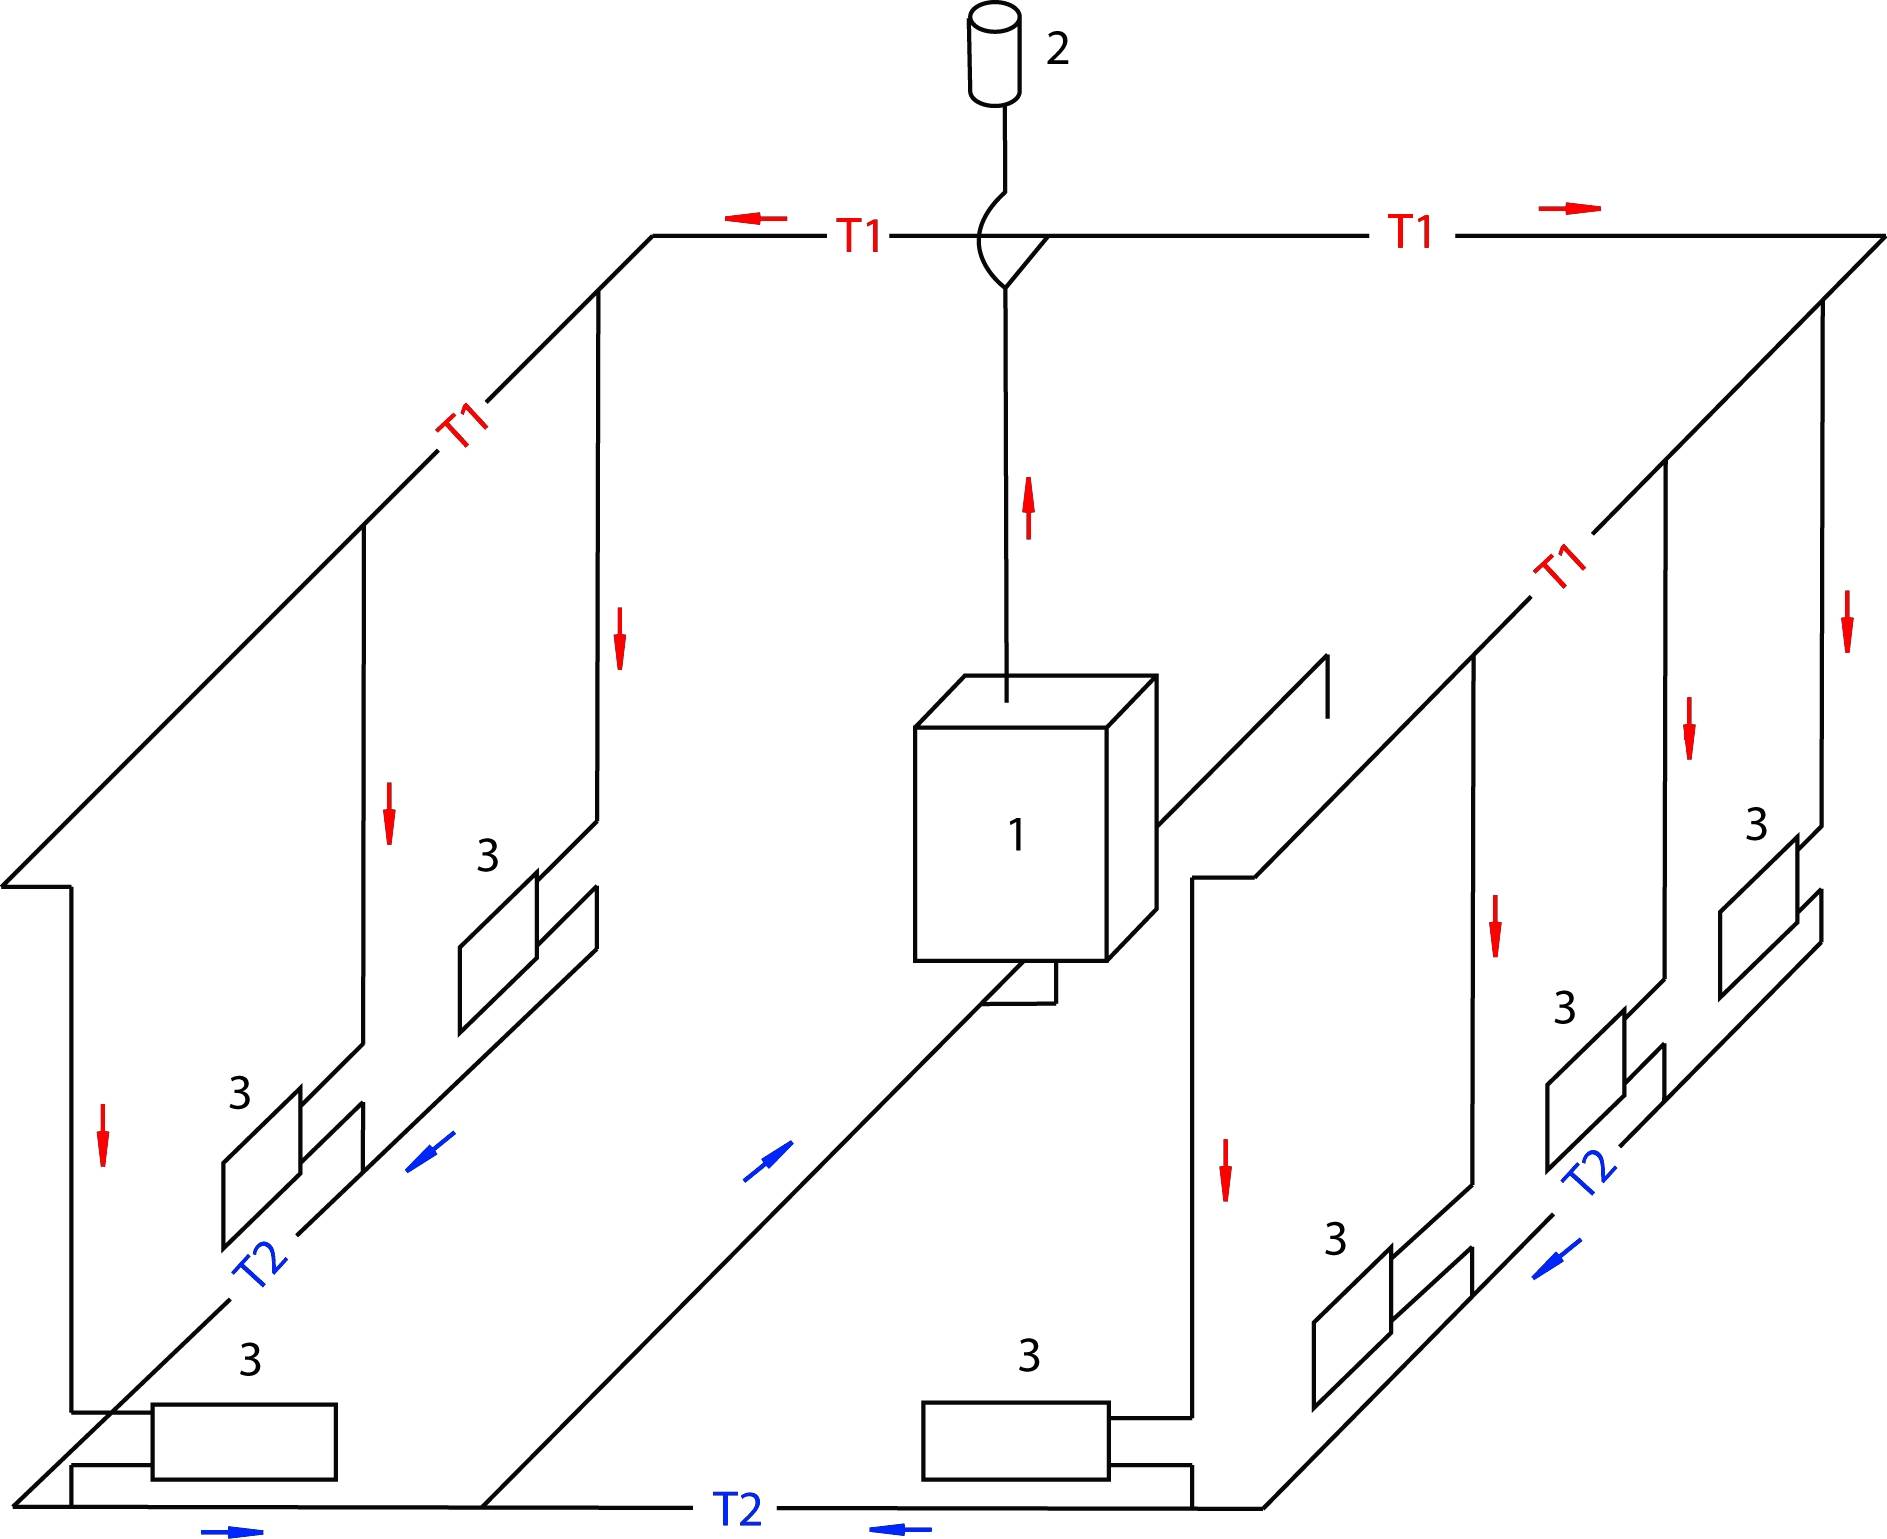 Схемы однотрубной системы отопления частного дома с нижней разводкой.